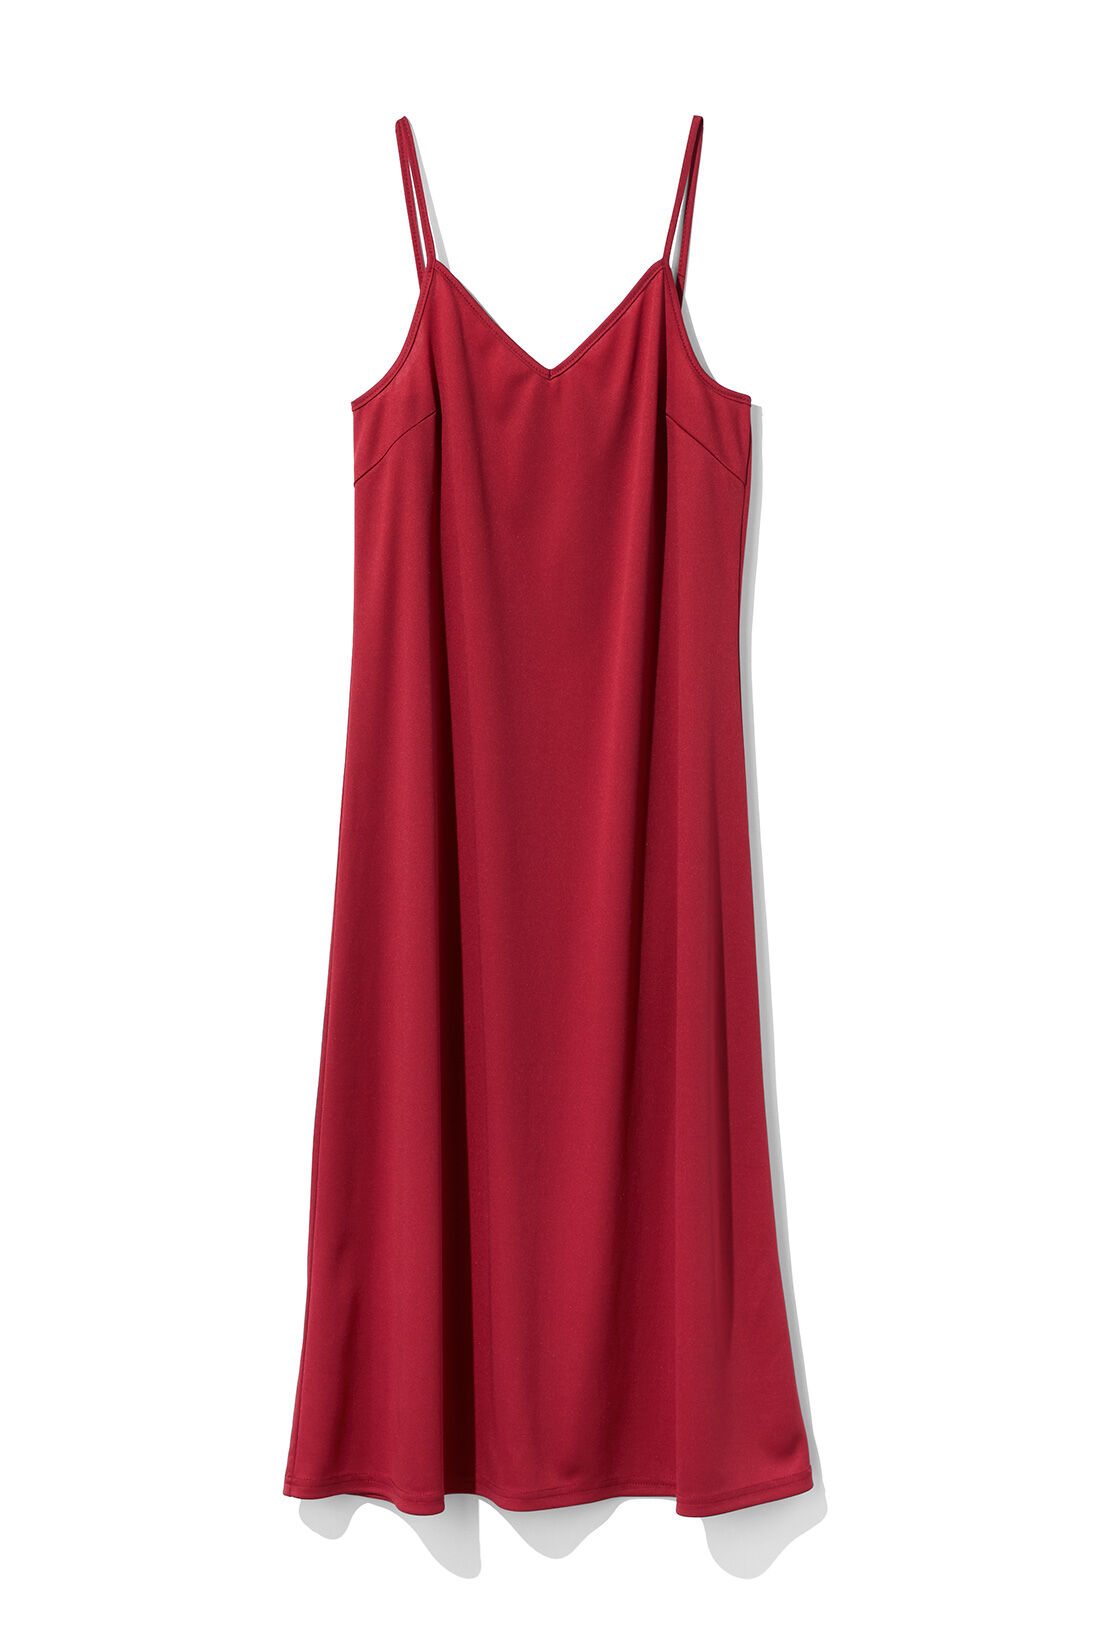 IEDIT|IEDIT[イディット]　大人にちょうどよい甘さのコットンボーラーレースのロングワンピース〈スミクロ〉|インナーを気にせずきれいに着られるように同色のキャミドレスをセット。